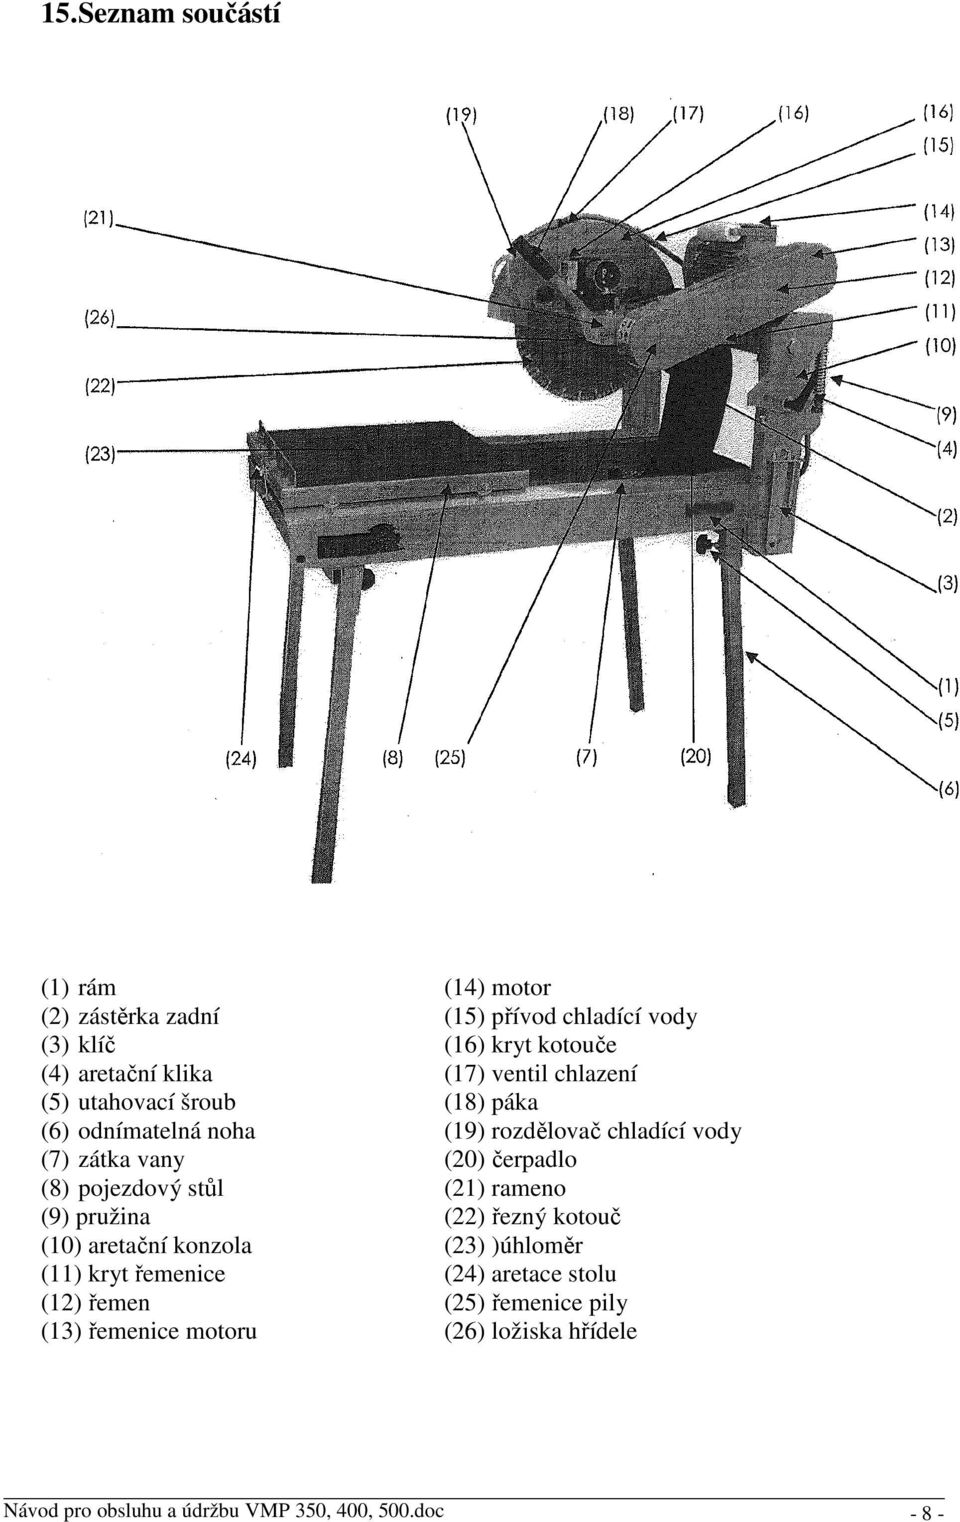 (8) pojezdový stůl (21) rameno (9) pružina (22) řezný kotouč (10) aretační konzola (23) )úhloměr (11) kryt řemenice (24) aretace